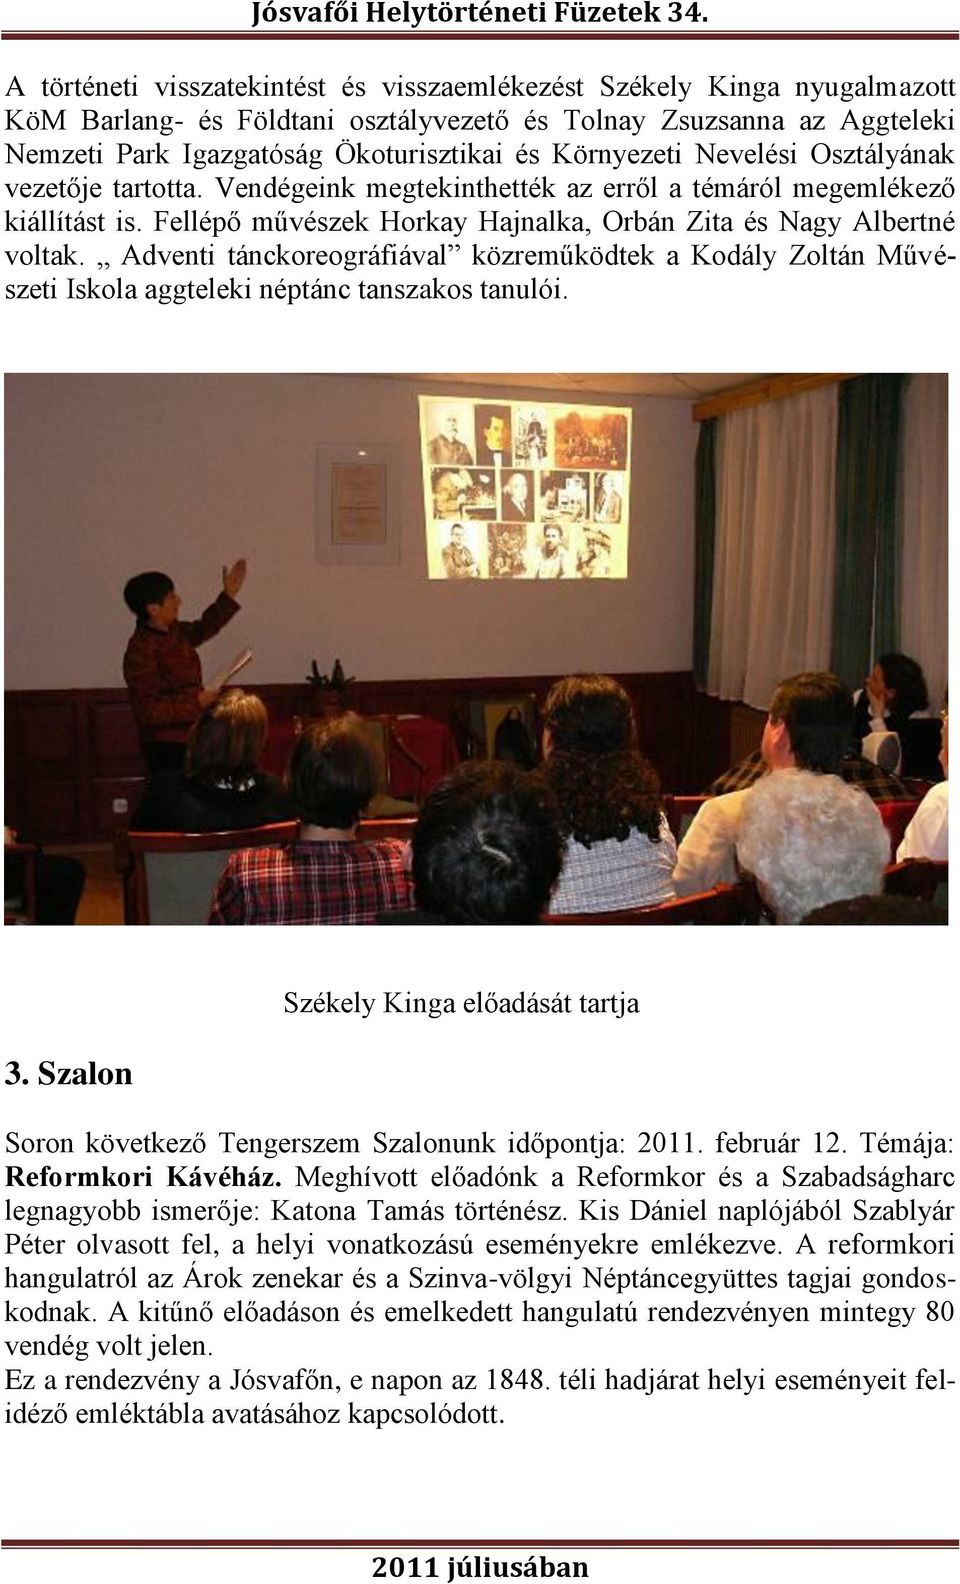 Adventi tánckoreográfiával közreműködtek a Kodály Zoltán Művészeti Iskola aggteleki néptánc tanszakos tanulói. 3.